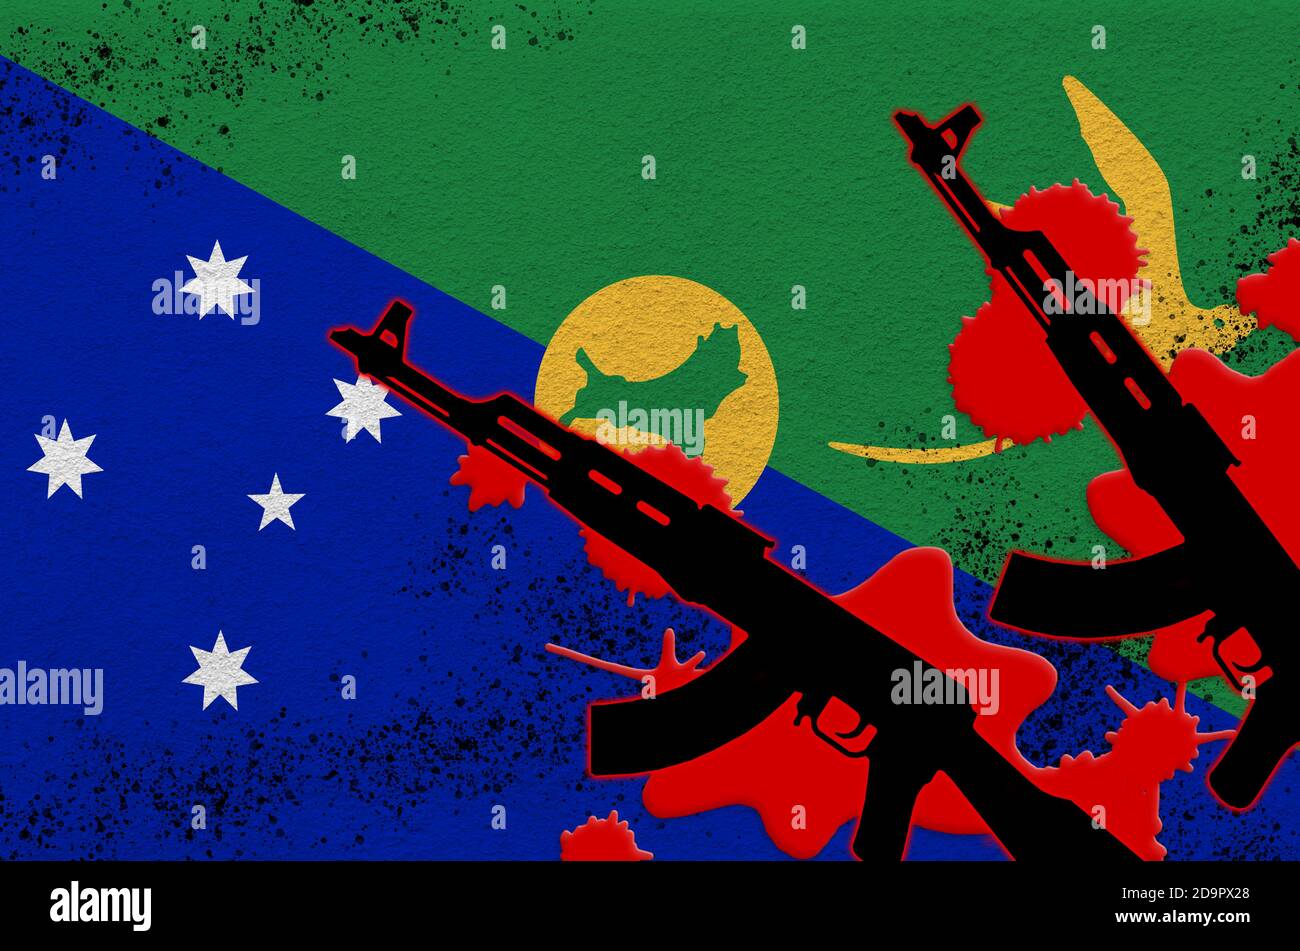 Bandiera dell'isola di Natale e due fucili neri AK-47 in sangue rosso. Concetto di attacco terroristico o operazioni militari con esito letale. Arma pericolosa Foto Stock